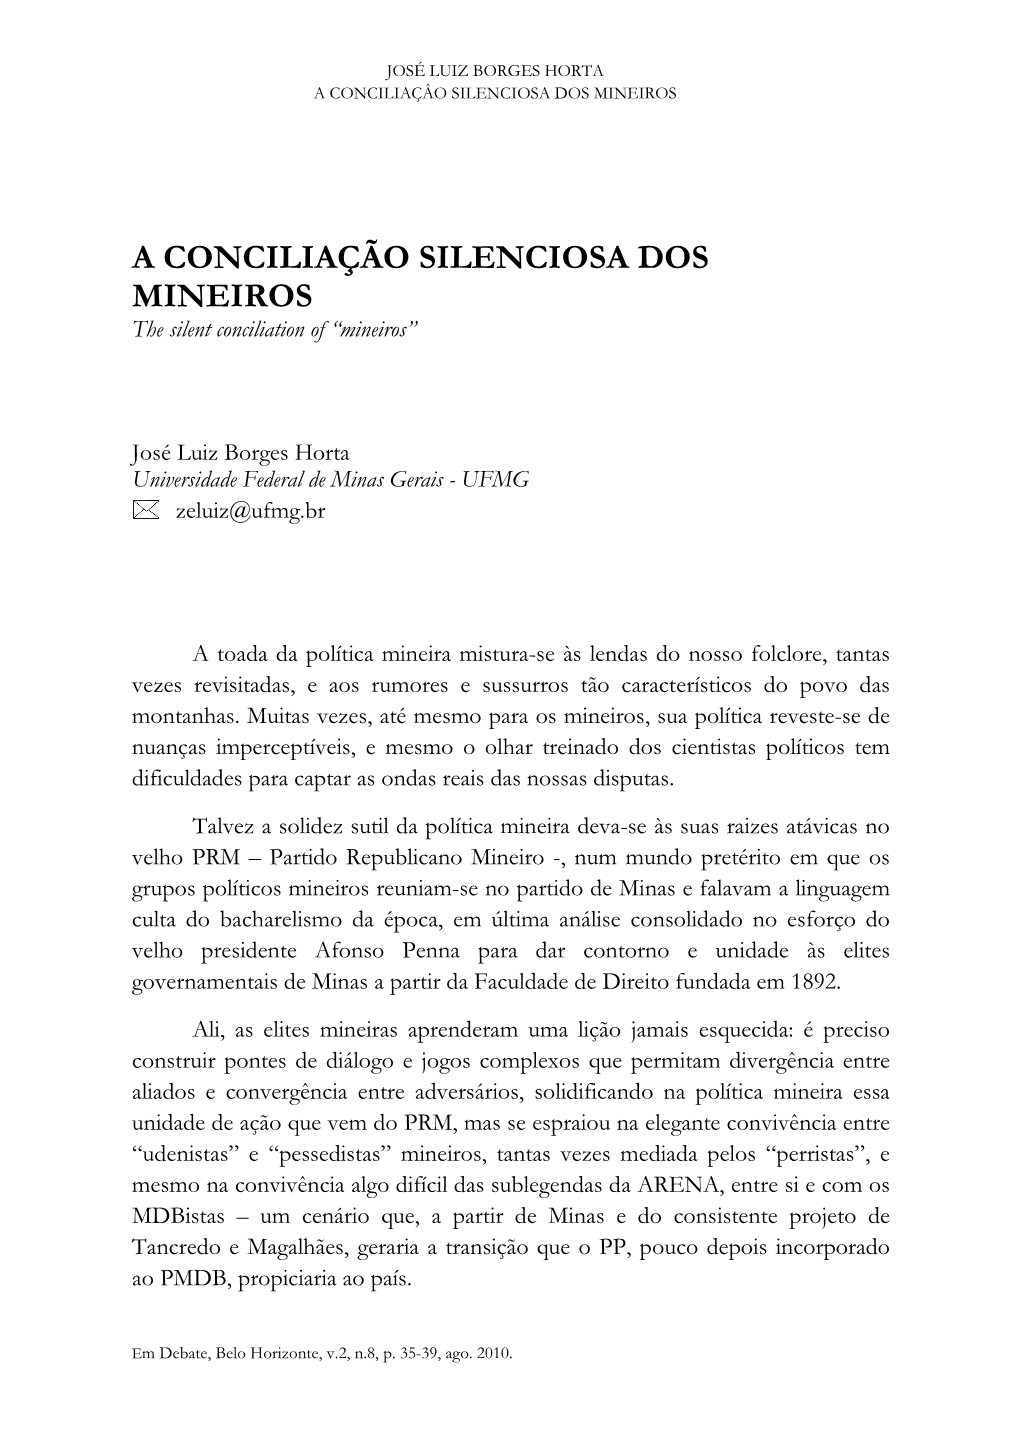 A CONCILIAÇÃO SILENCIOSA DOS MINEIROS the Silent Conciliation of “Mineiros”